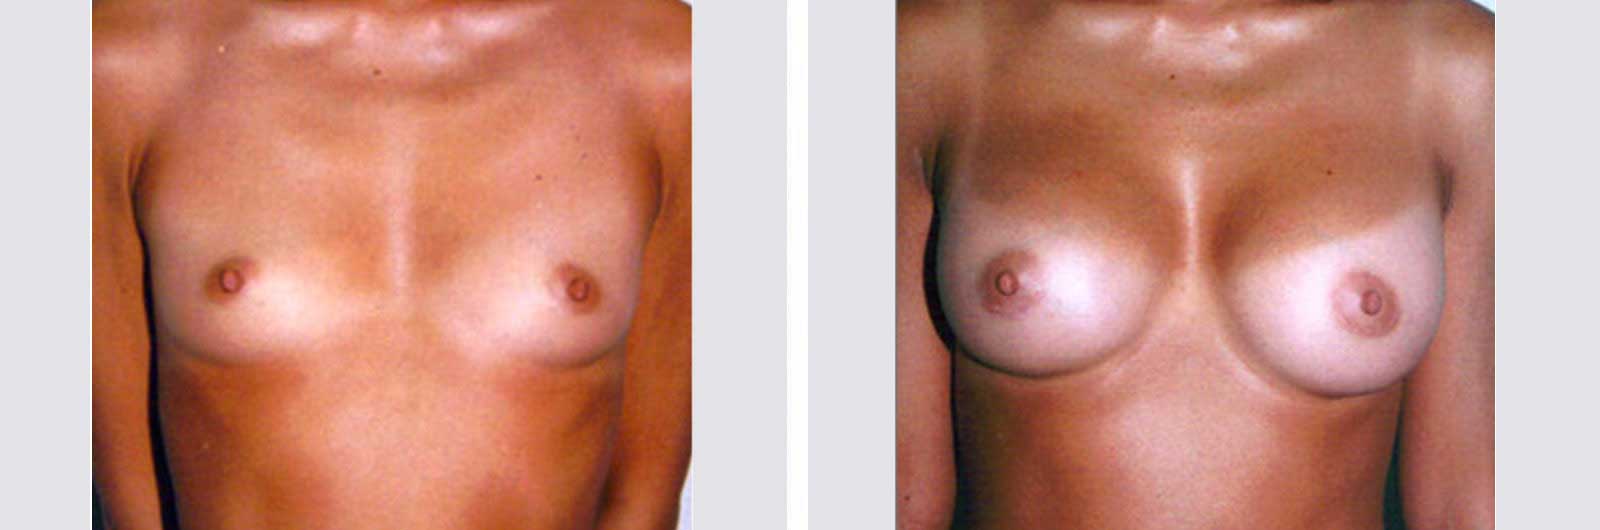 Cirugía de aumento de senos por Dr. Manlio Speziale